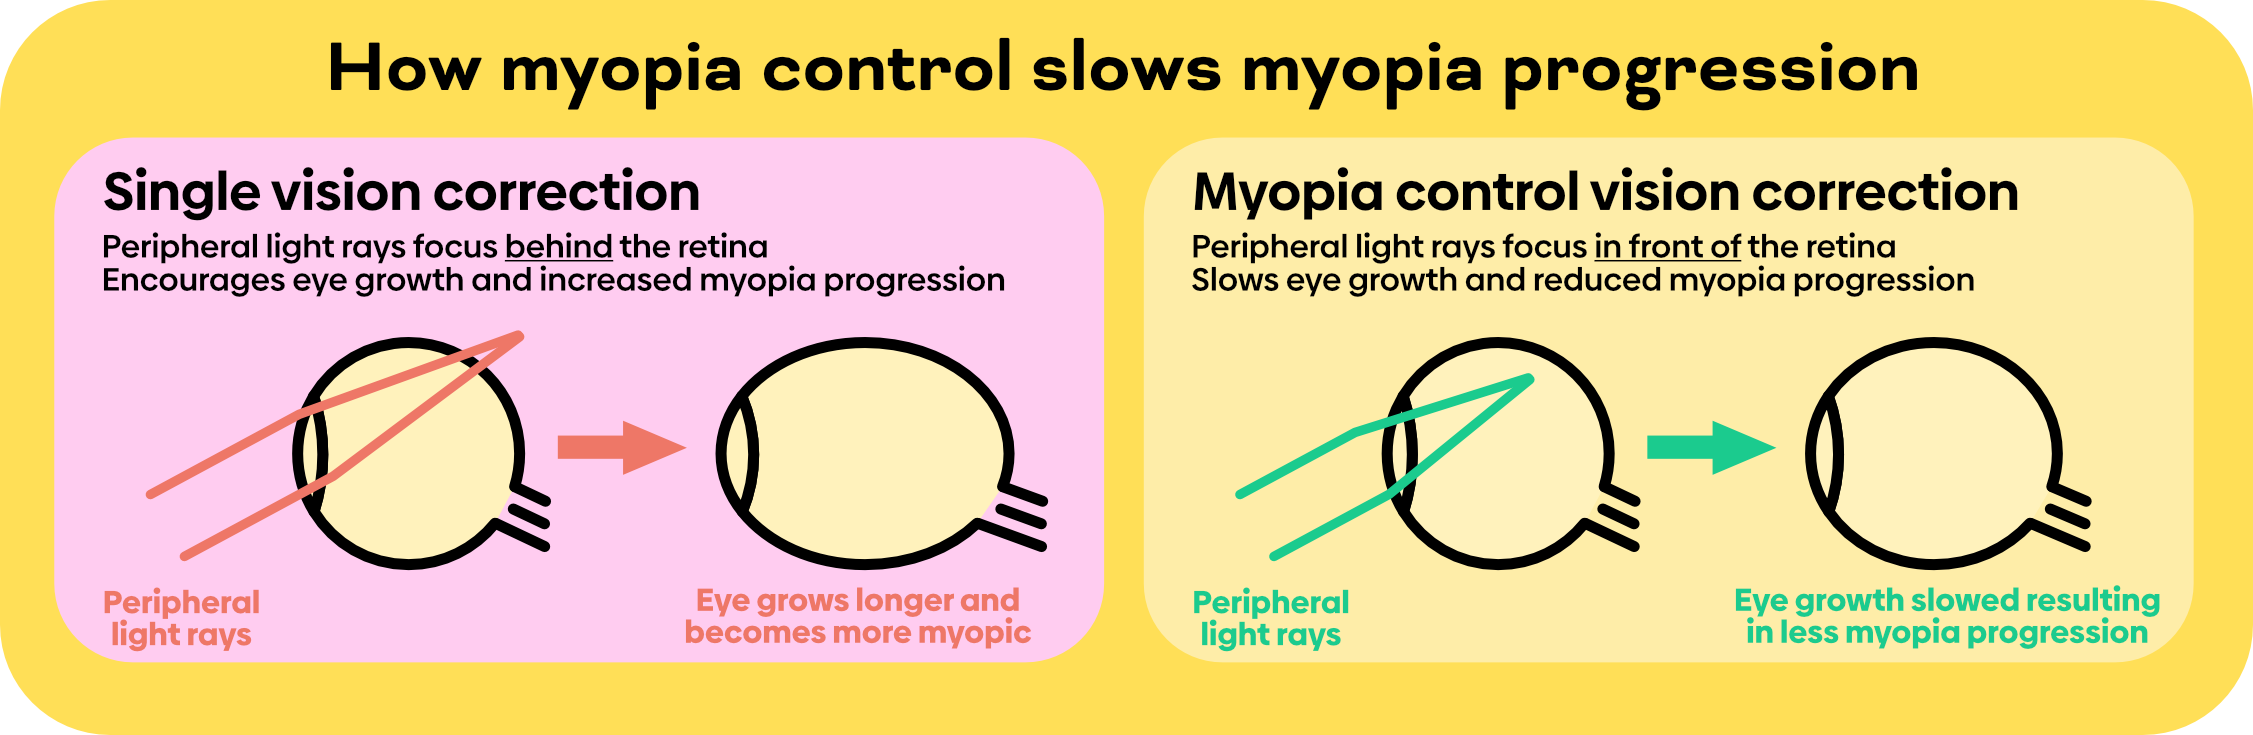 correction of myopia